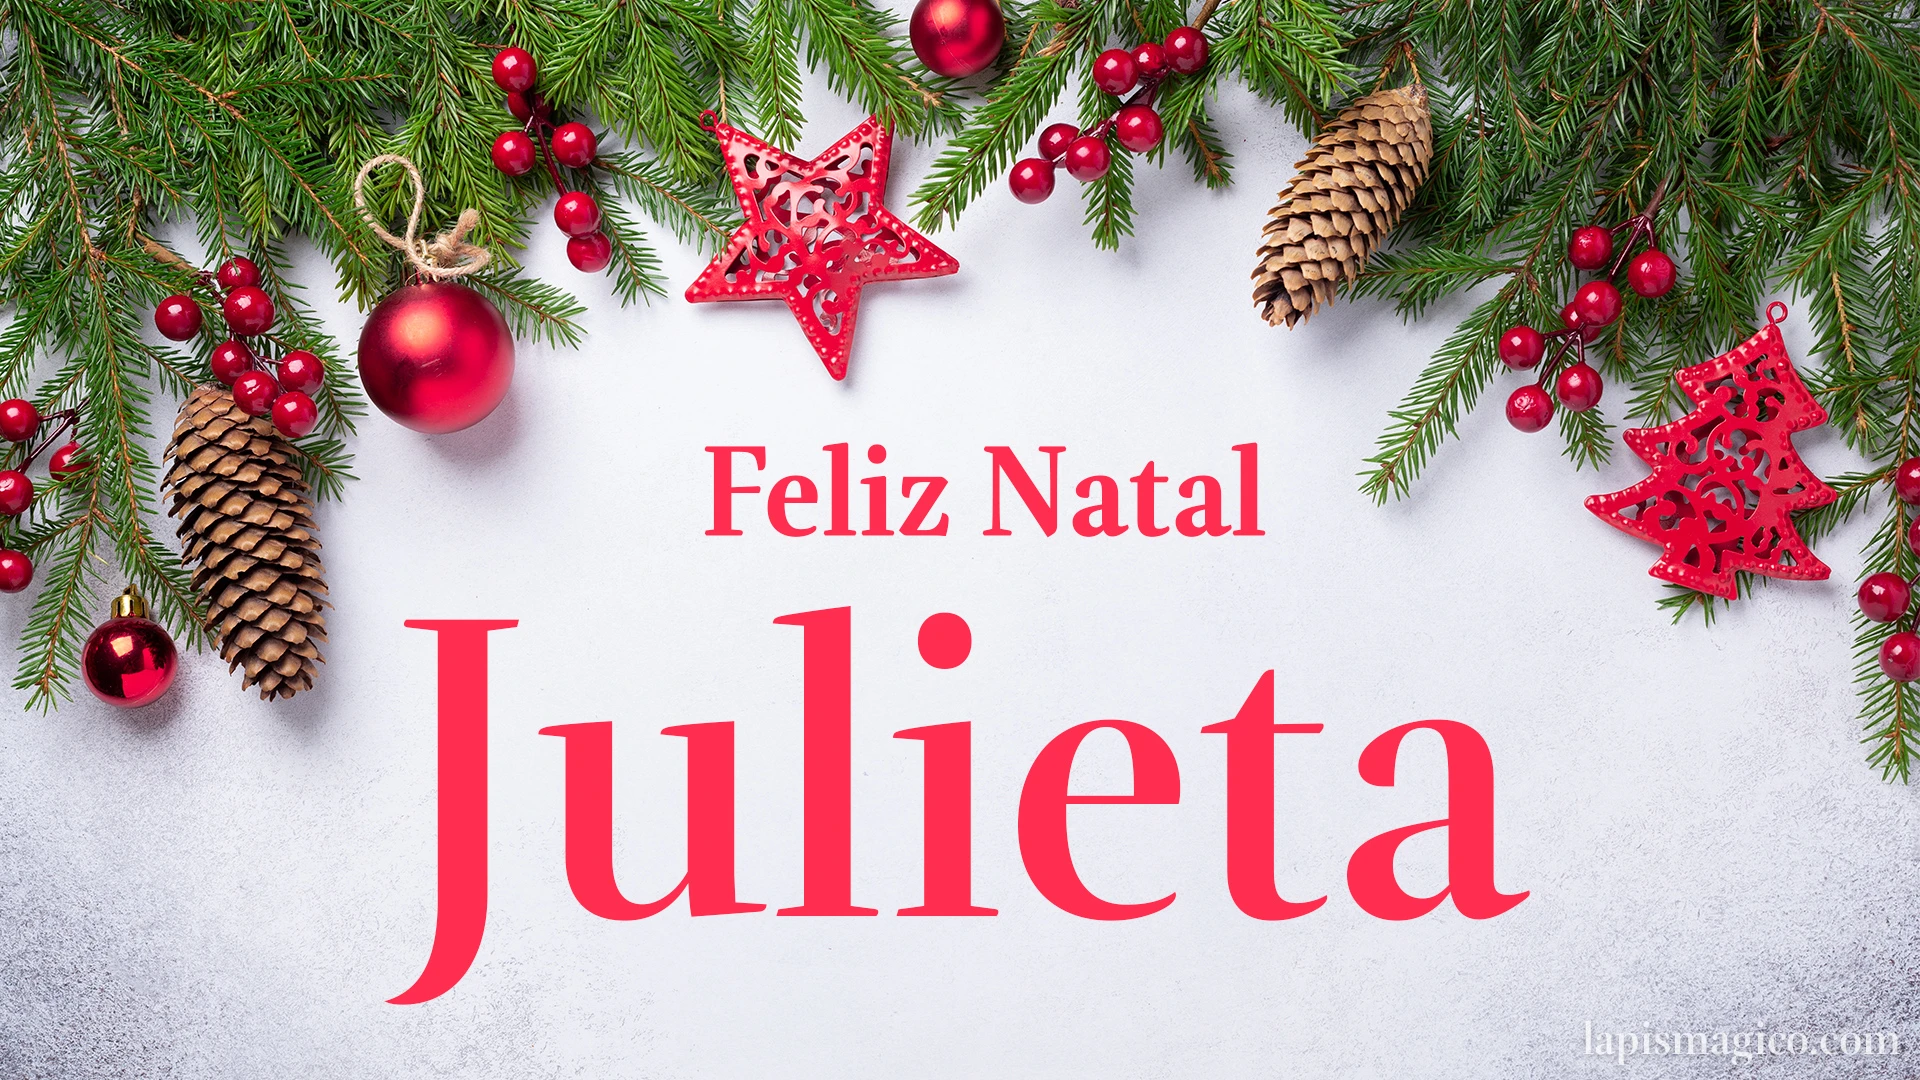 Oh Julieta, cinco postais de Feliz Natal Postal com o teu nome